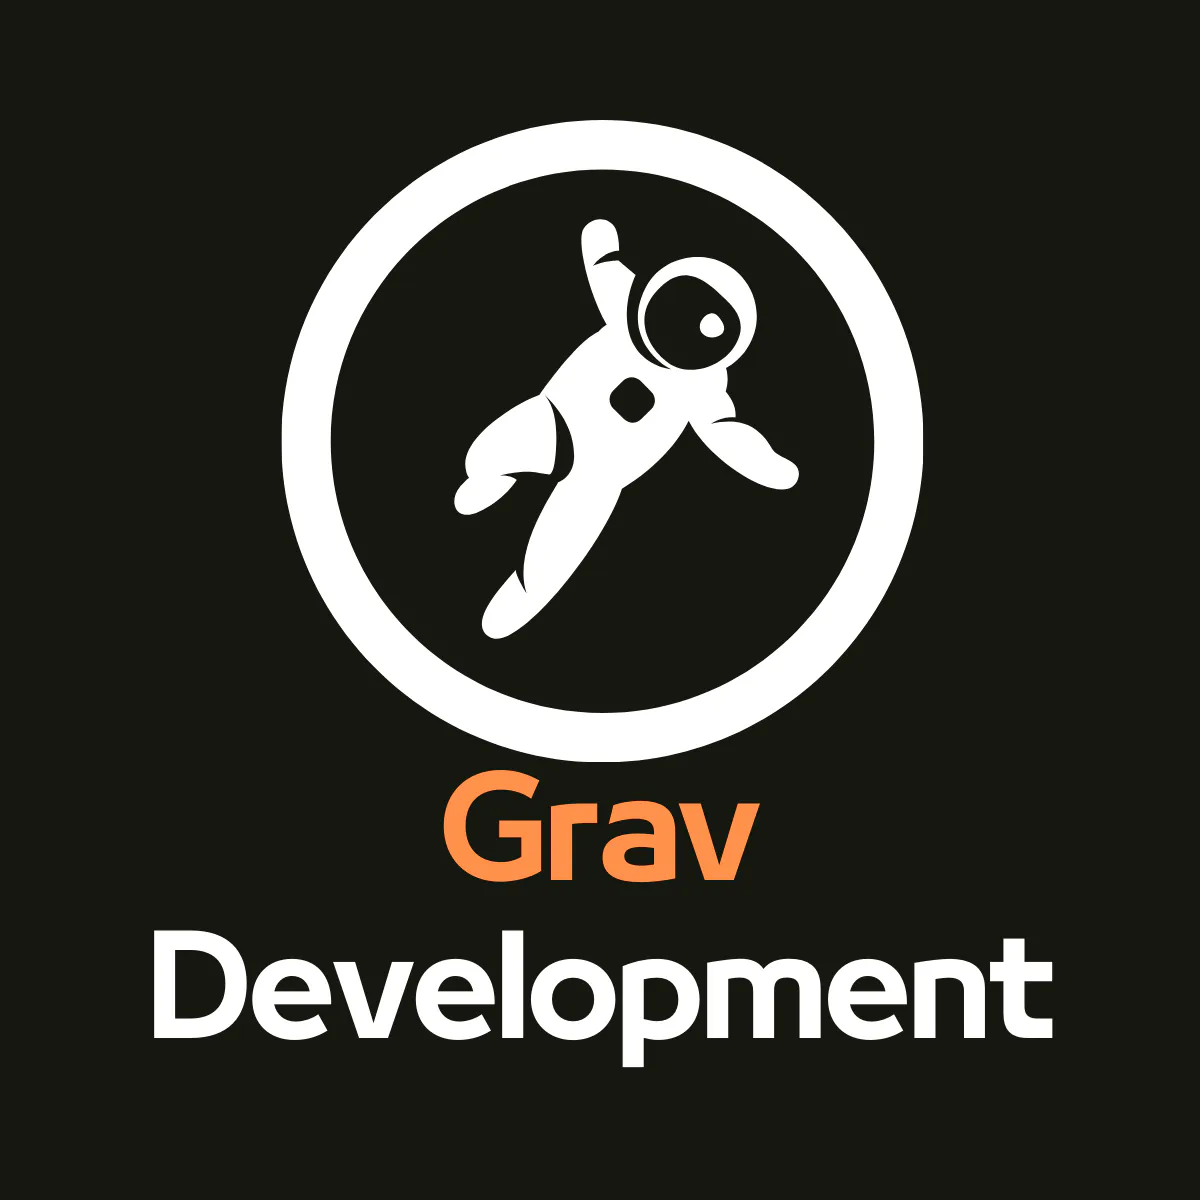 Grav Development